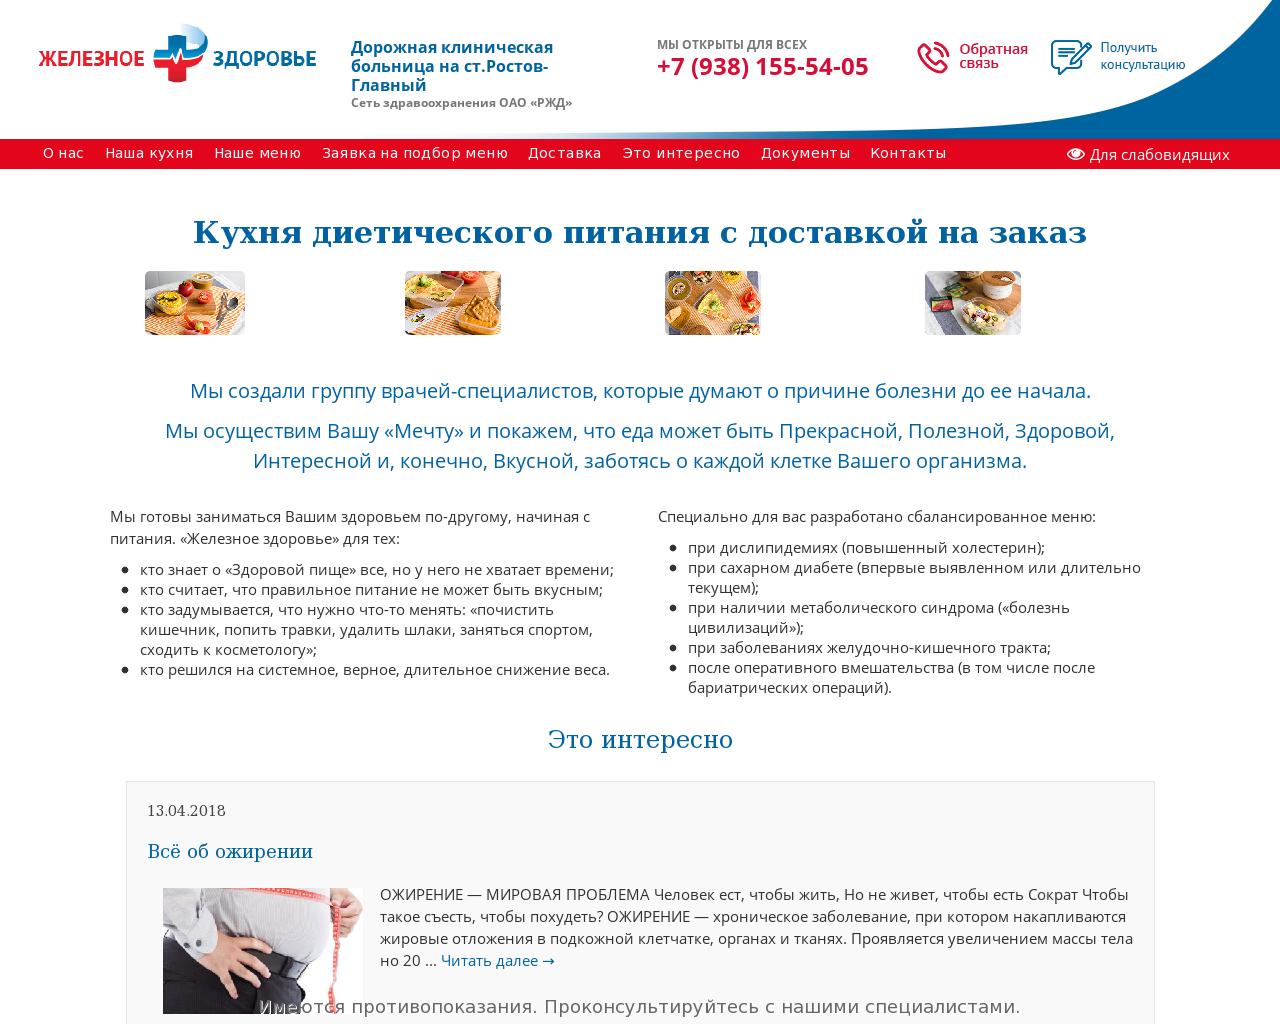 Изображение сайта железное-здоровье.рф в разрешении 1280x1024